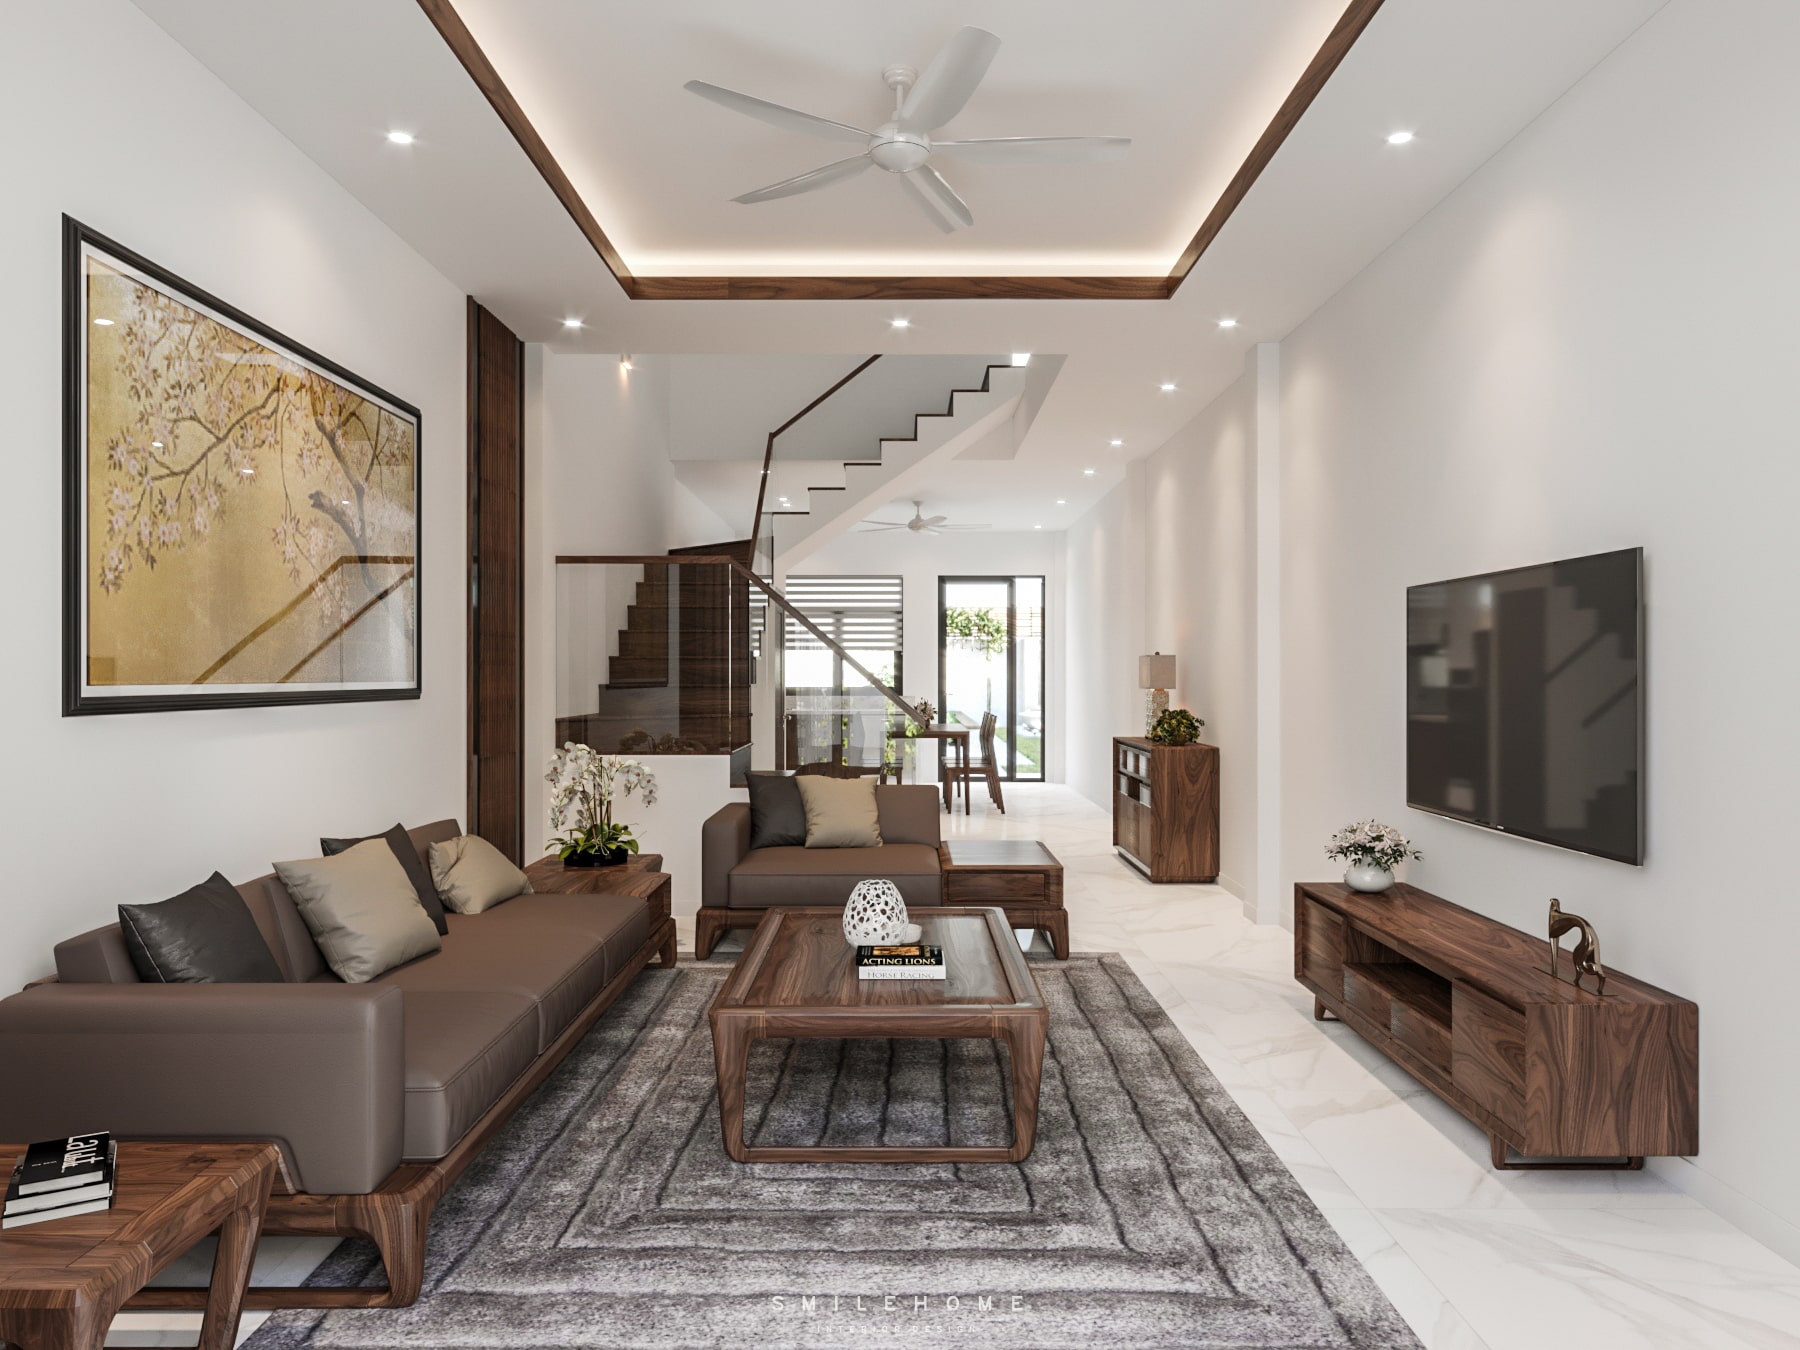 Cách thiết kế phòng khách đơn giản, không rườm rà làm tăng độ thông thoáng cho không gian nhà